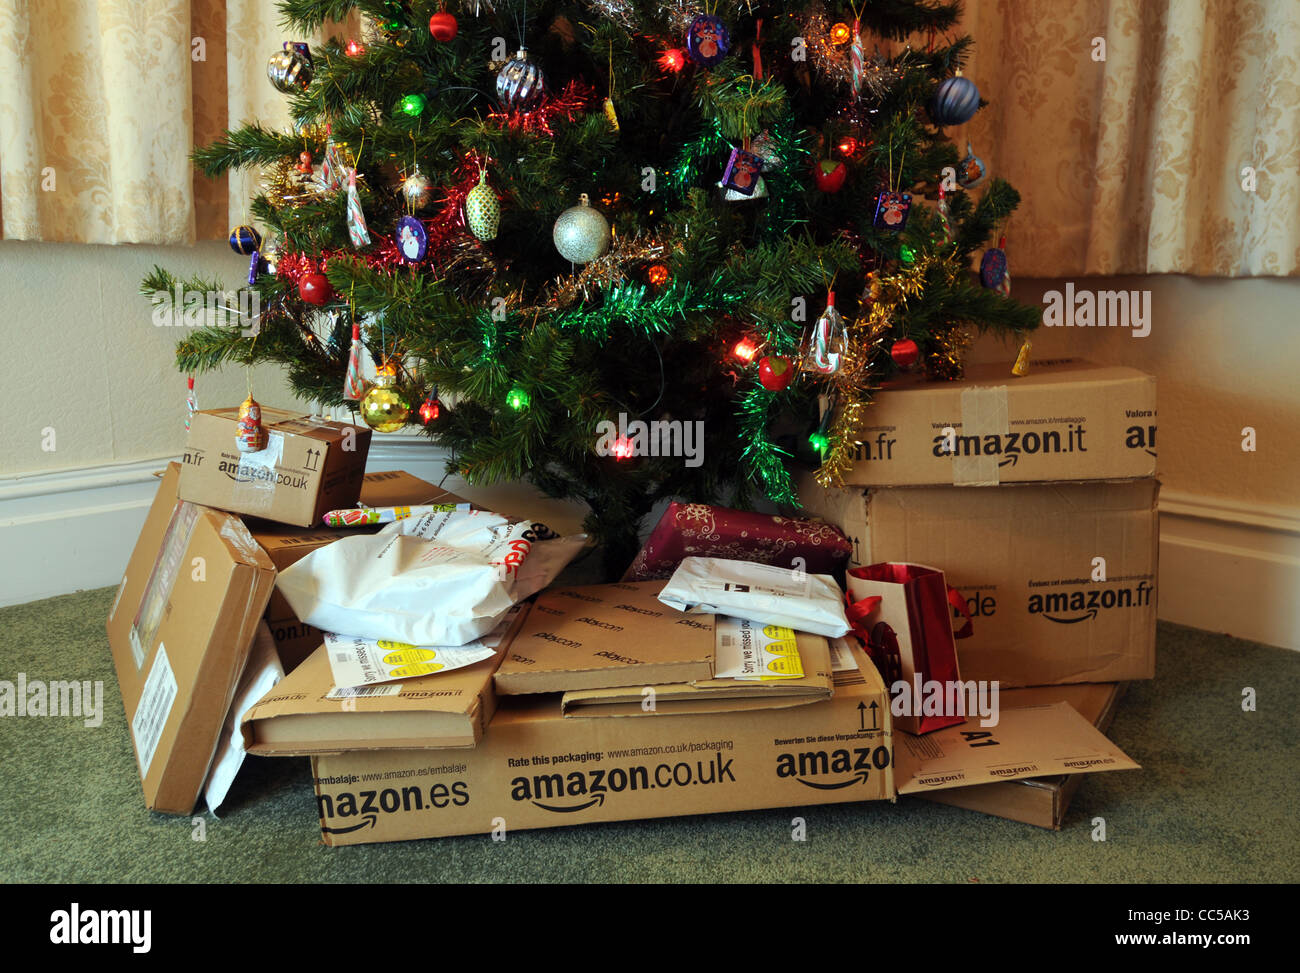 Online-shopping unter dem Weihnachtsbaum zu Weihnachten, UK Stockfoto